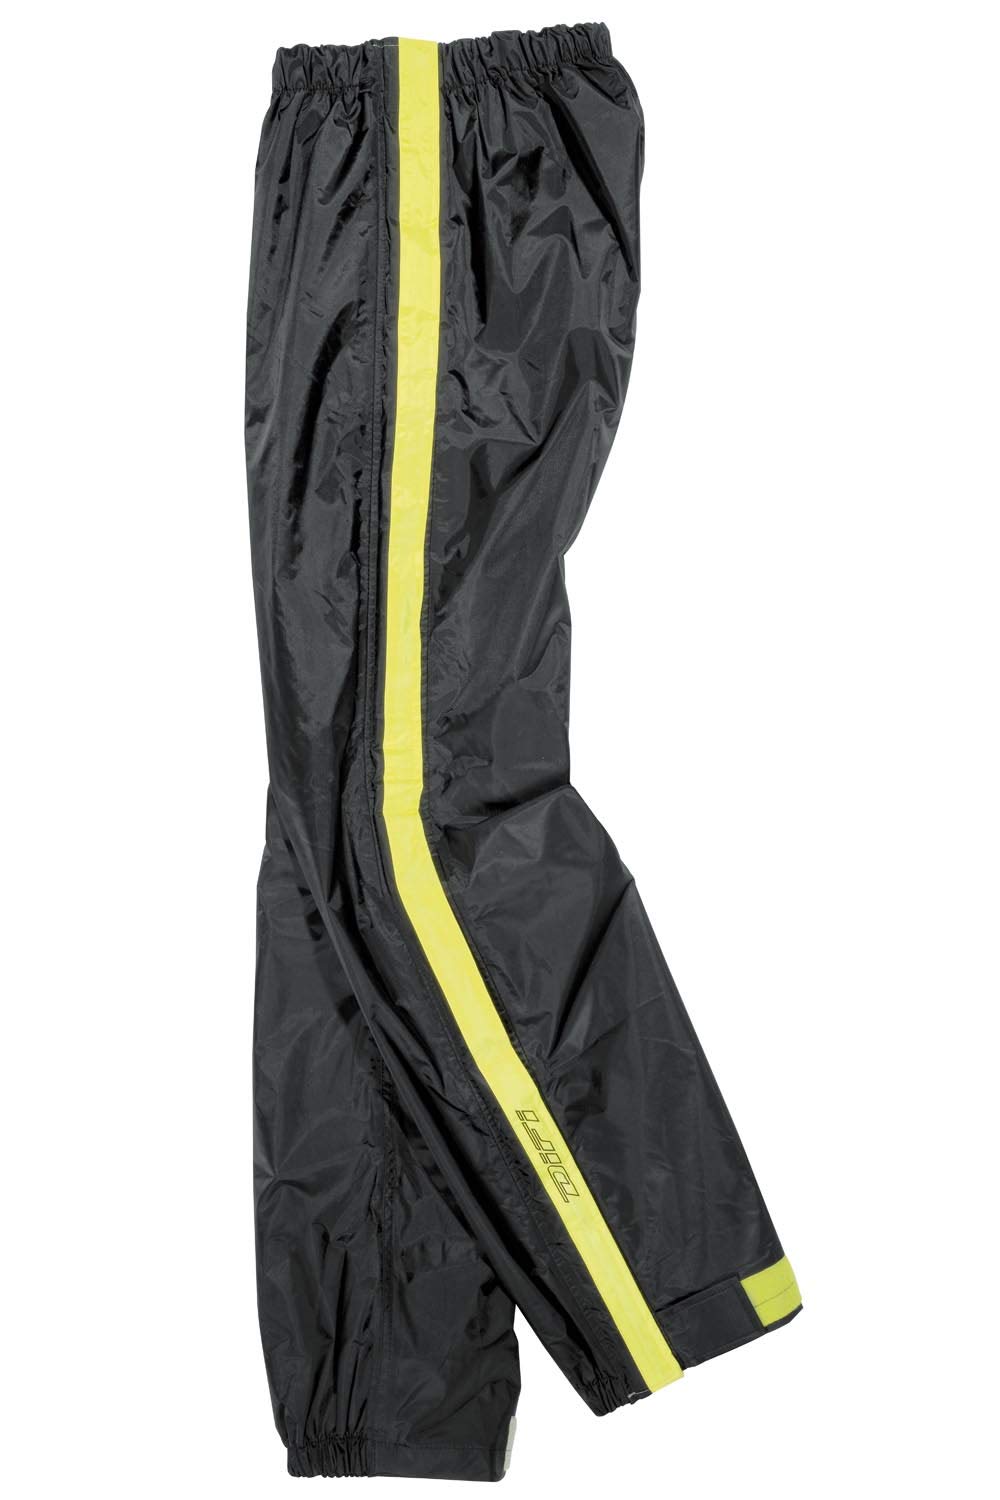 Difi Regenhose Zip mit Reißverschluss - schwarz gelb, 3XL von Difi